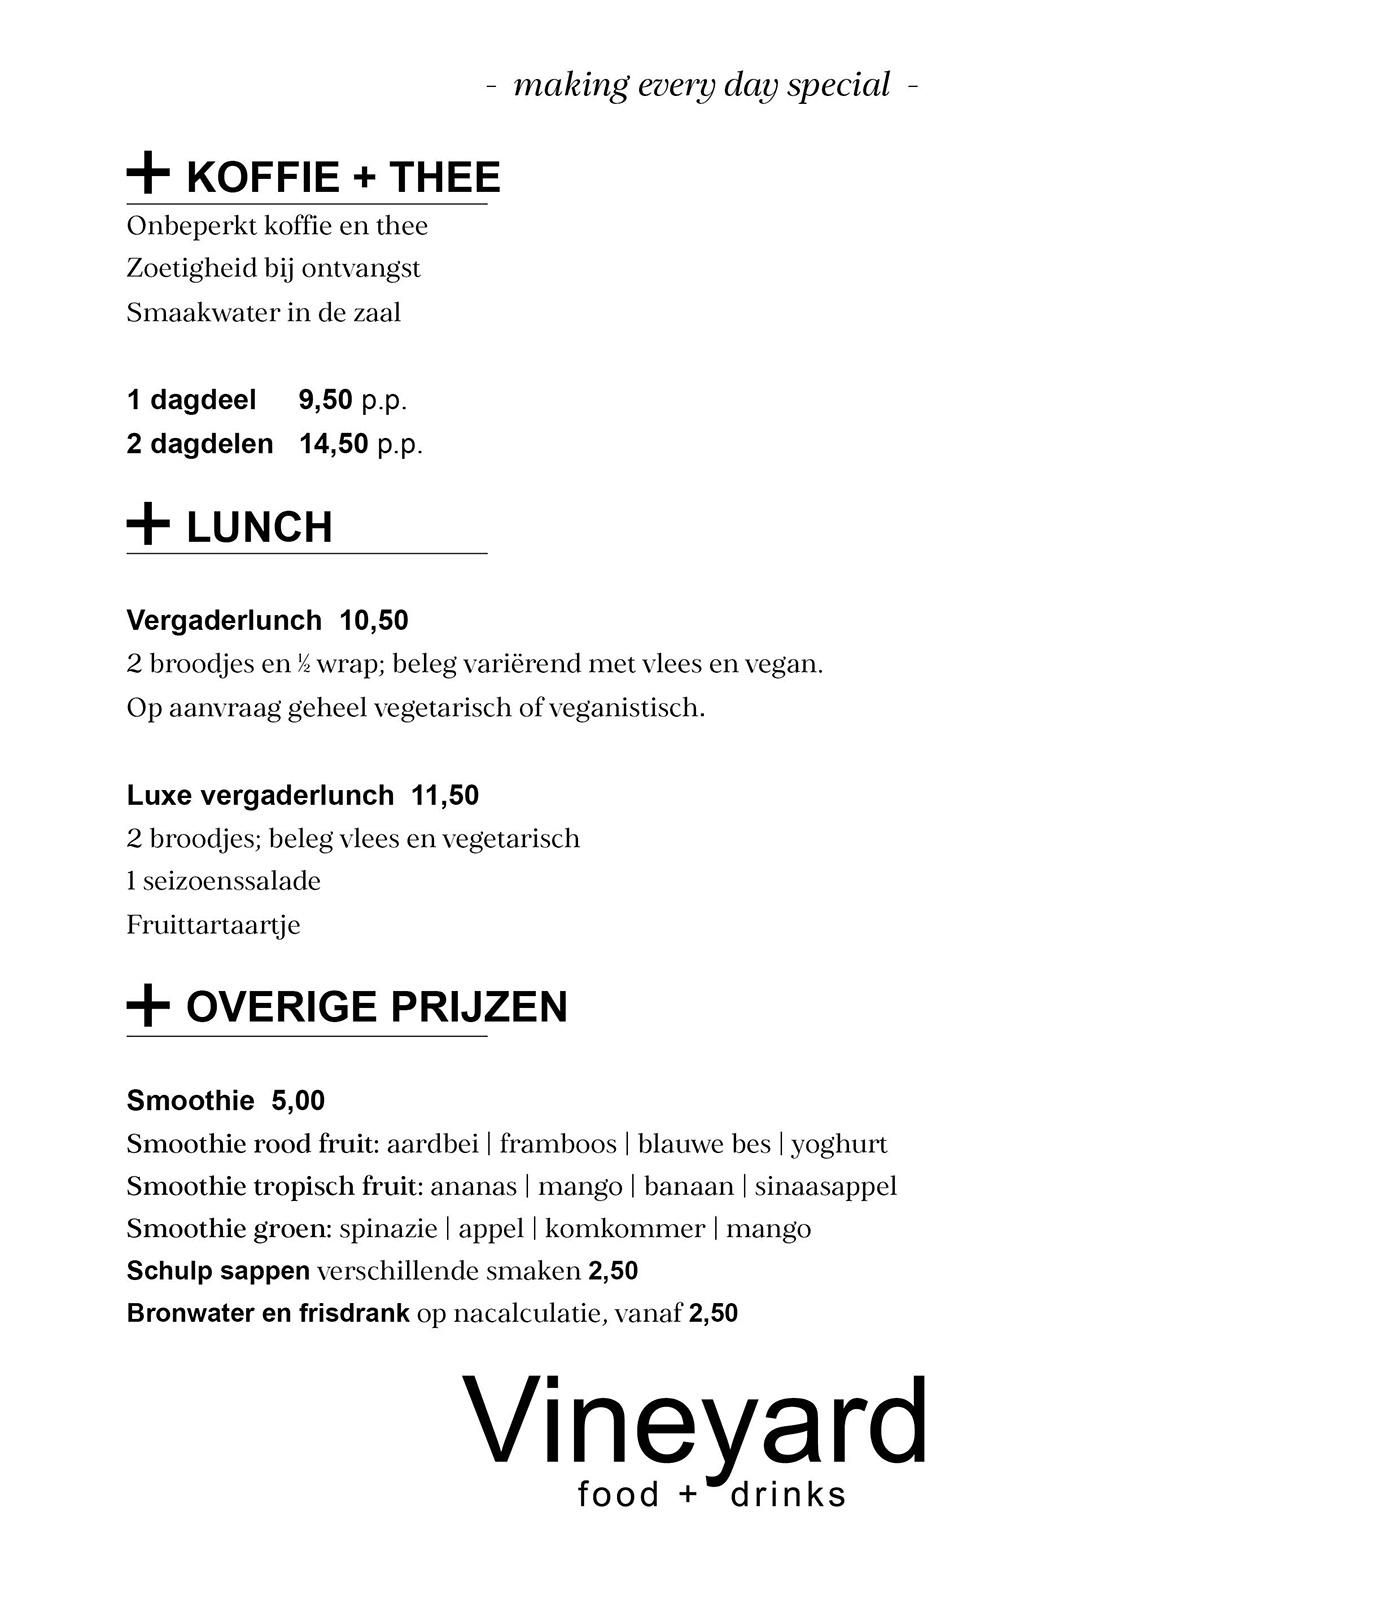 Vineyard food + drinks online meetings menu